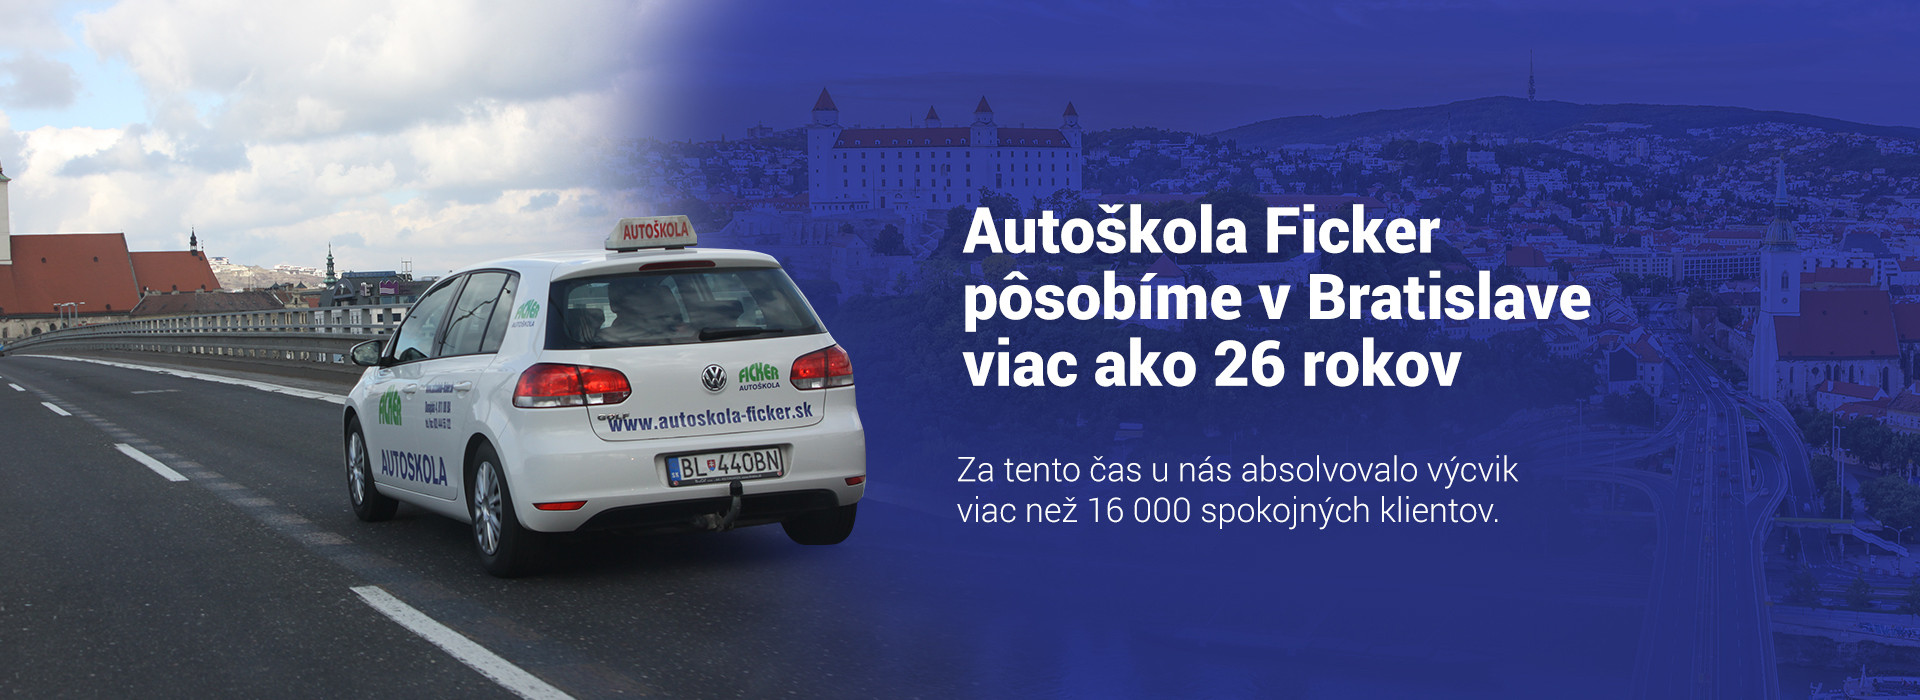 Autoškola Ficker viac ako 26 rokov v Bratislave